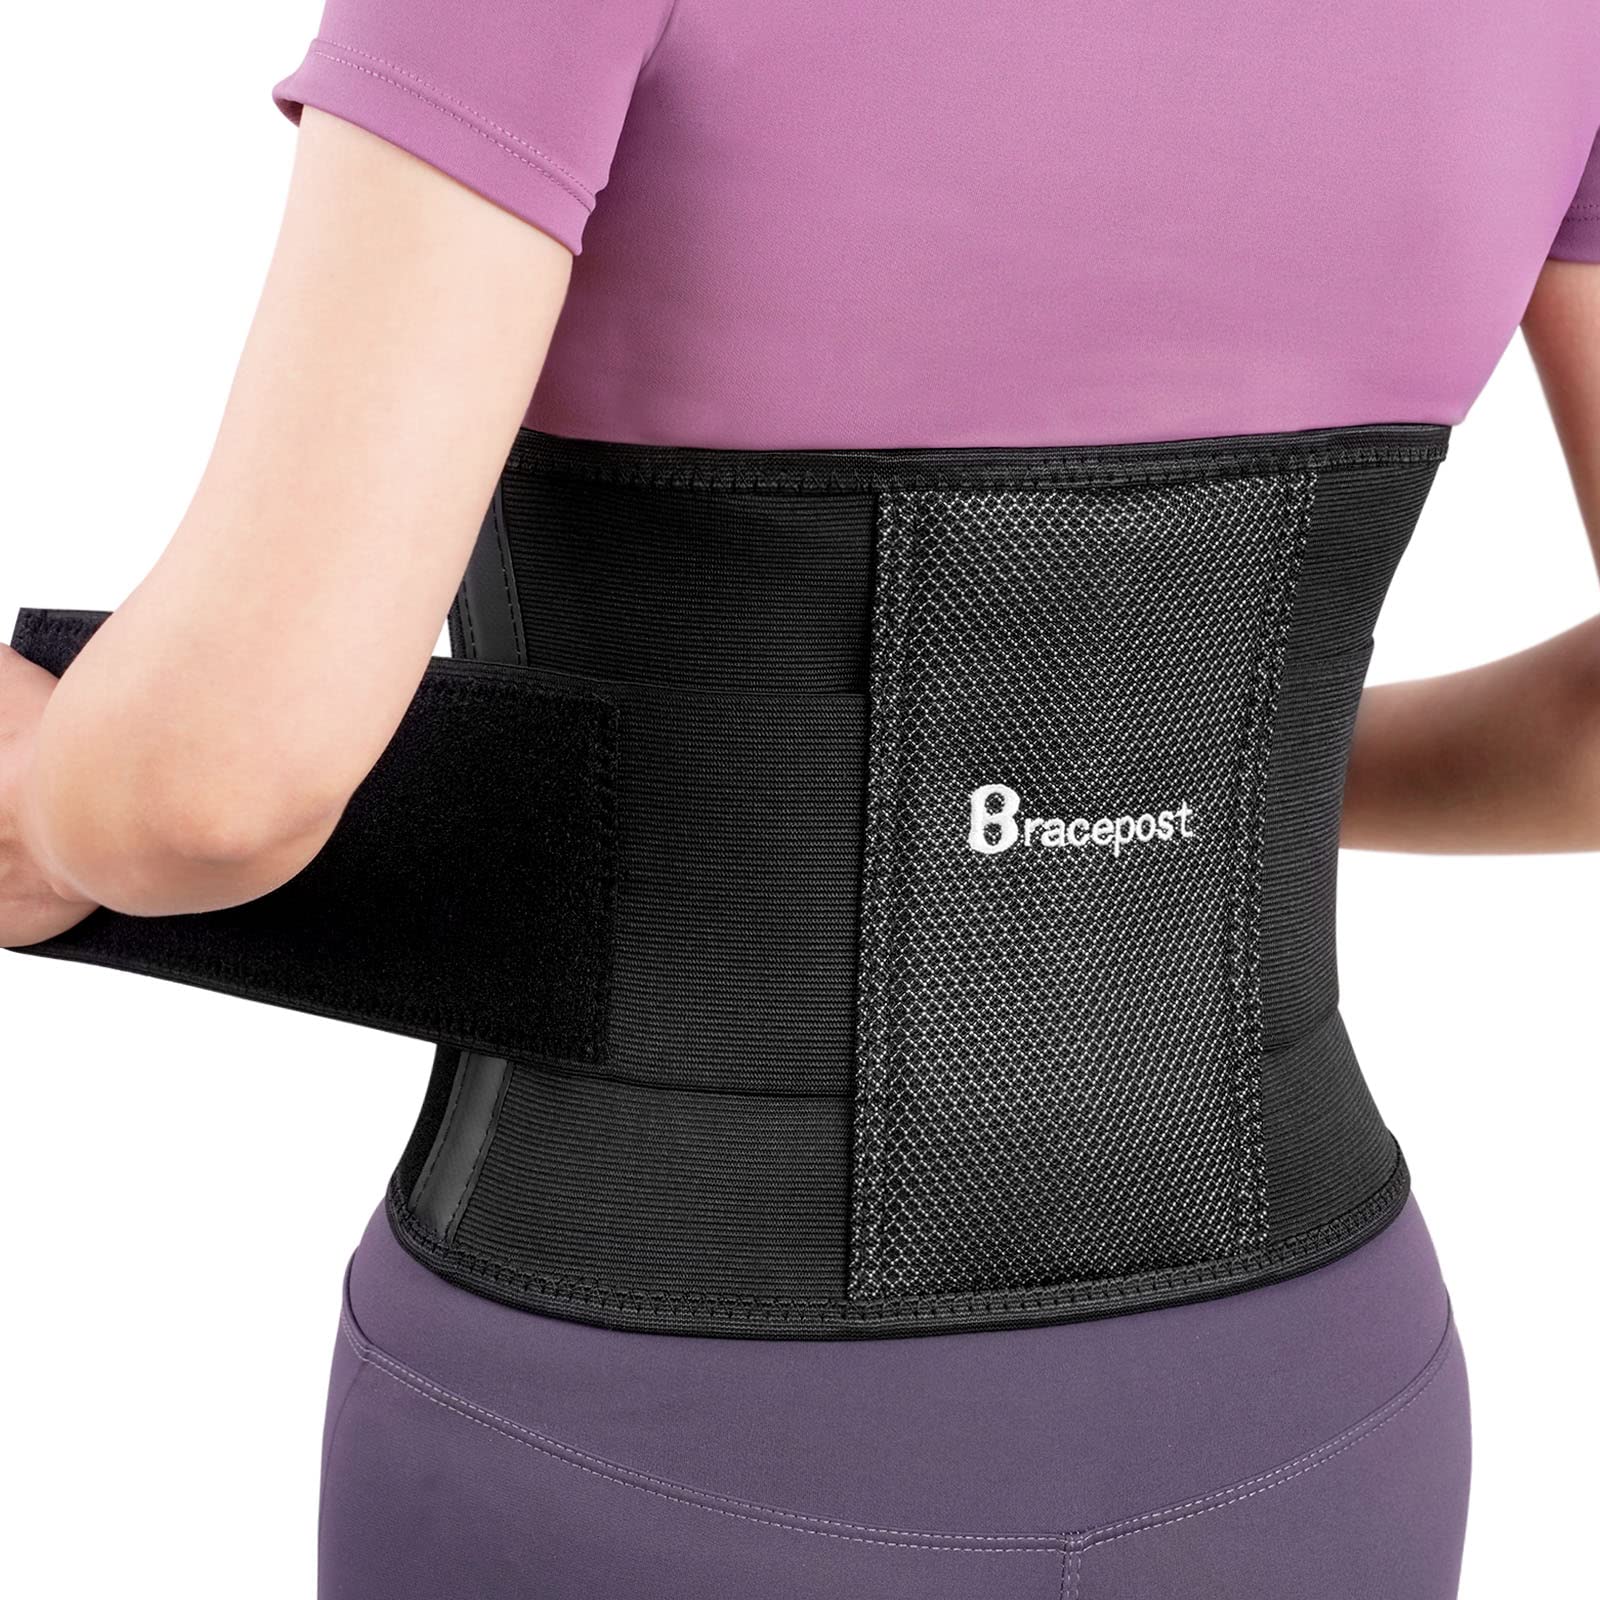 Back Lumbar Support Belt, Back Brace, Breathable Adjustable Lower